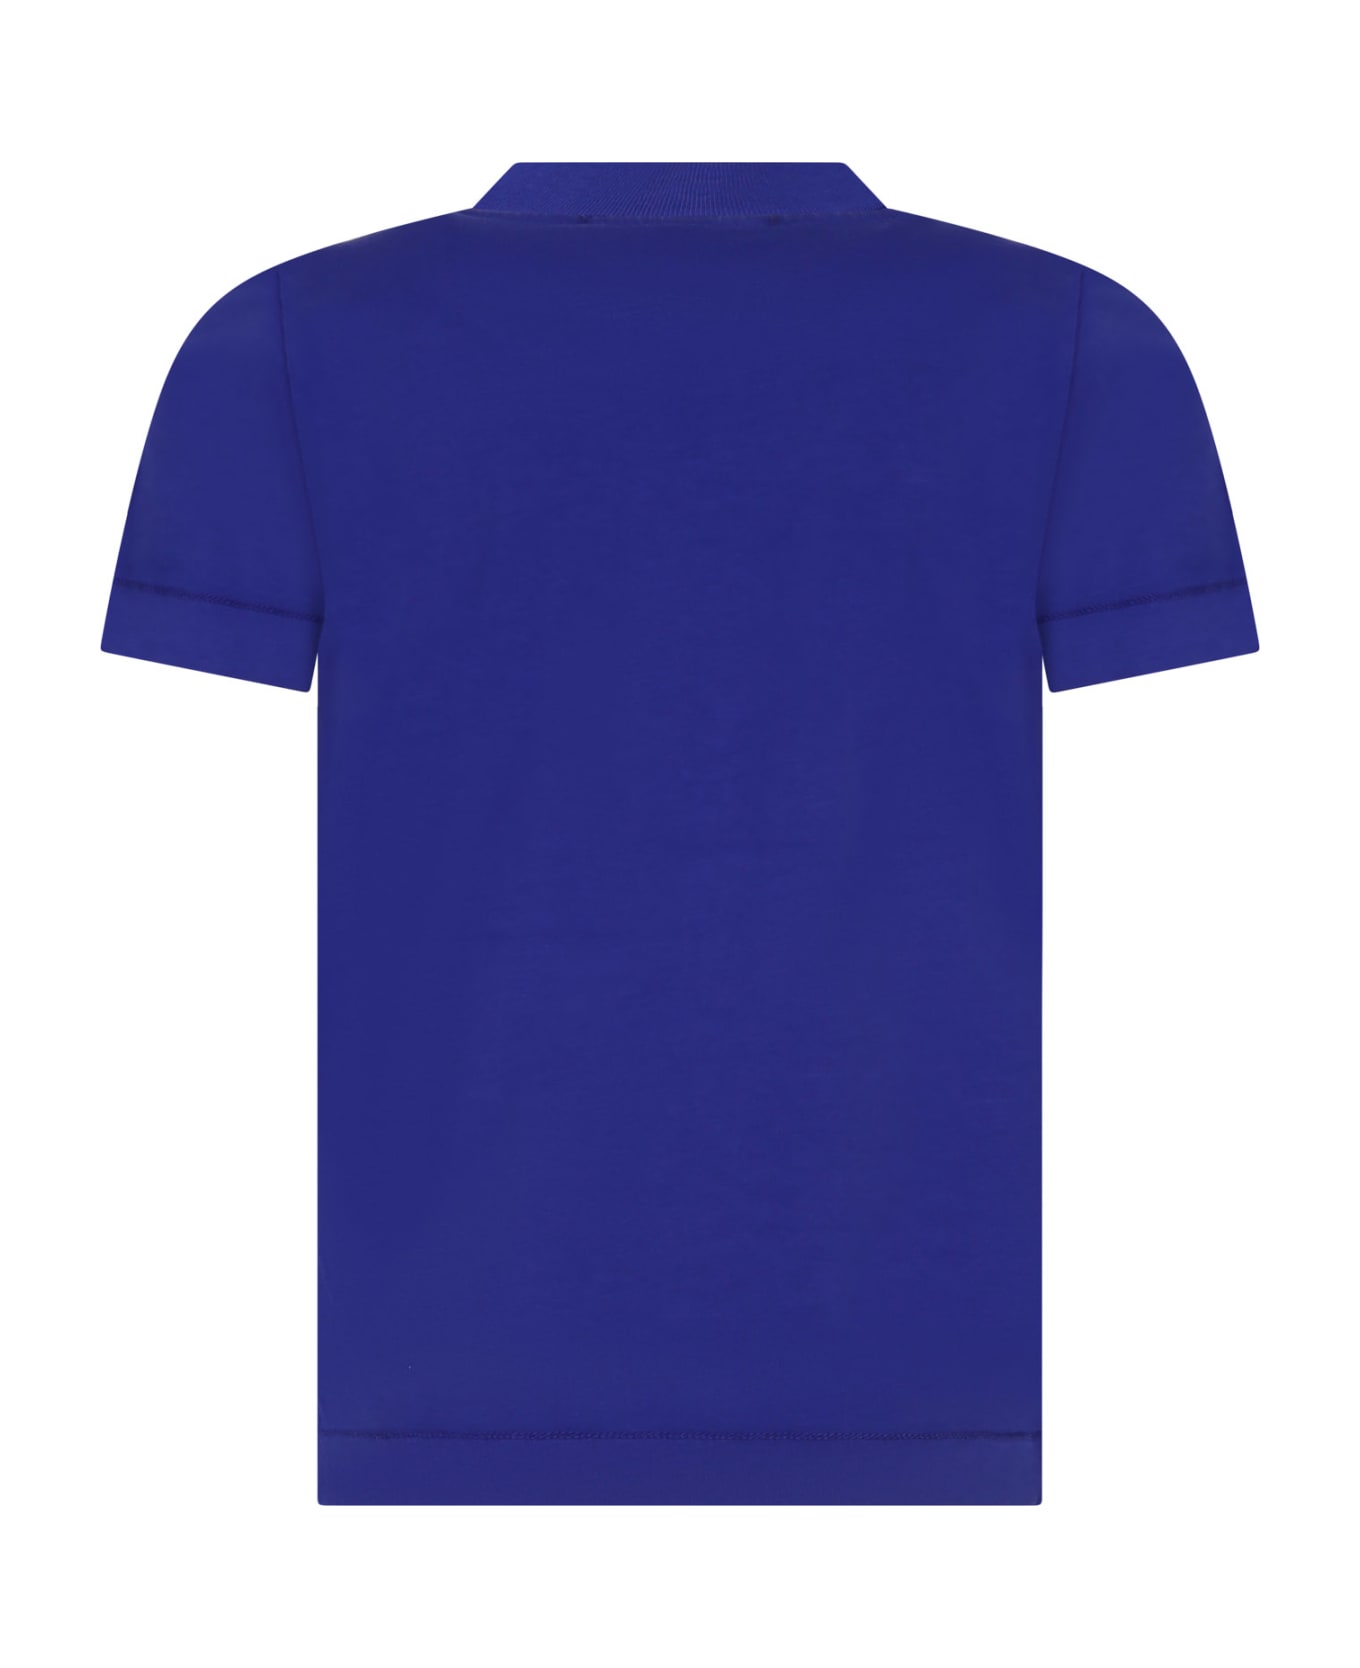 Stone Island Junior Light Blue T-shirt For Boy With Logo - Light Blue